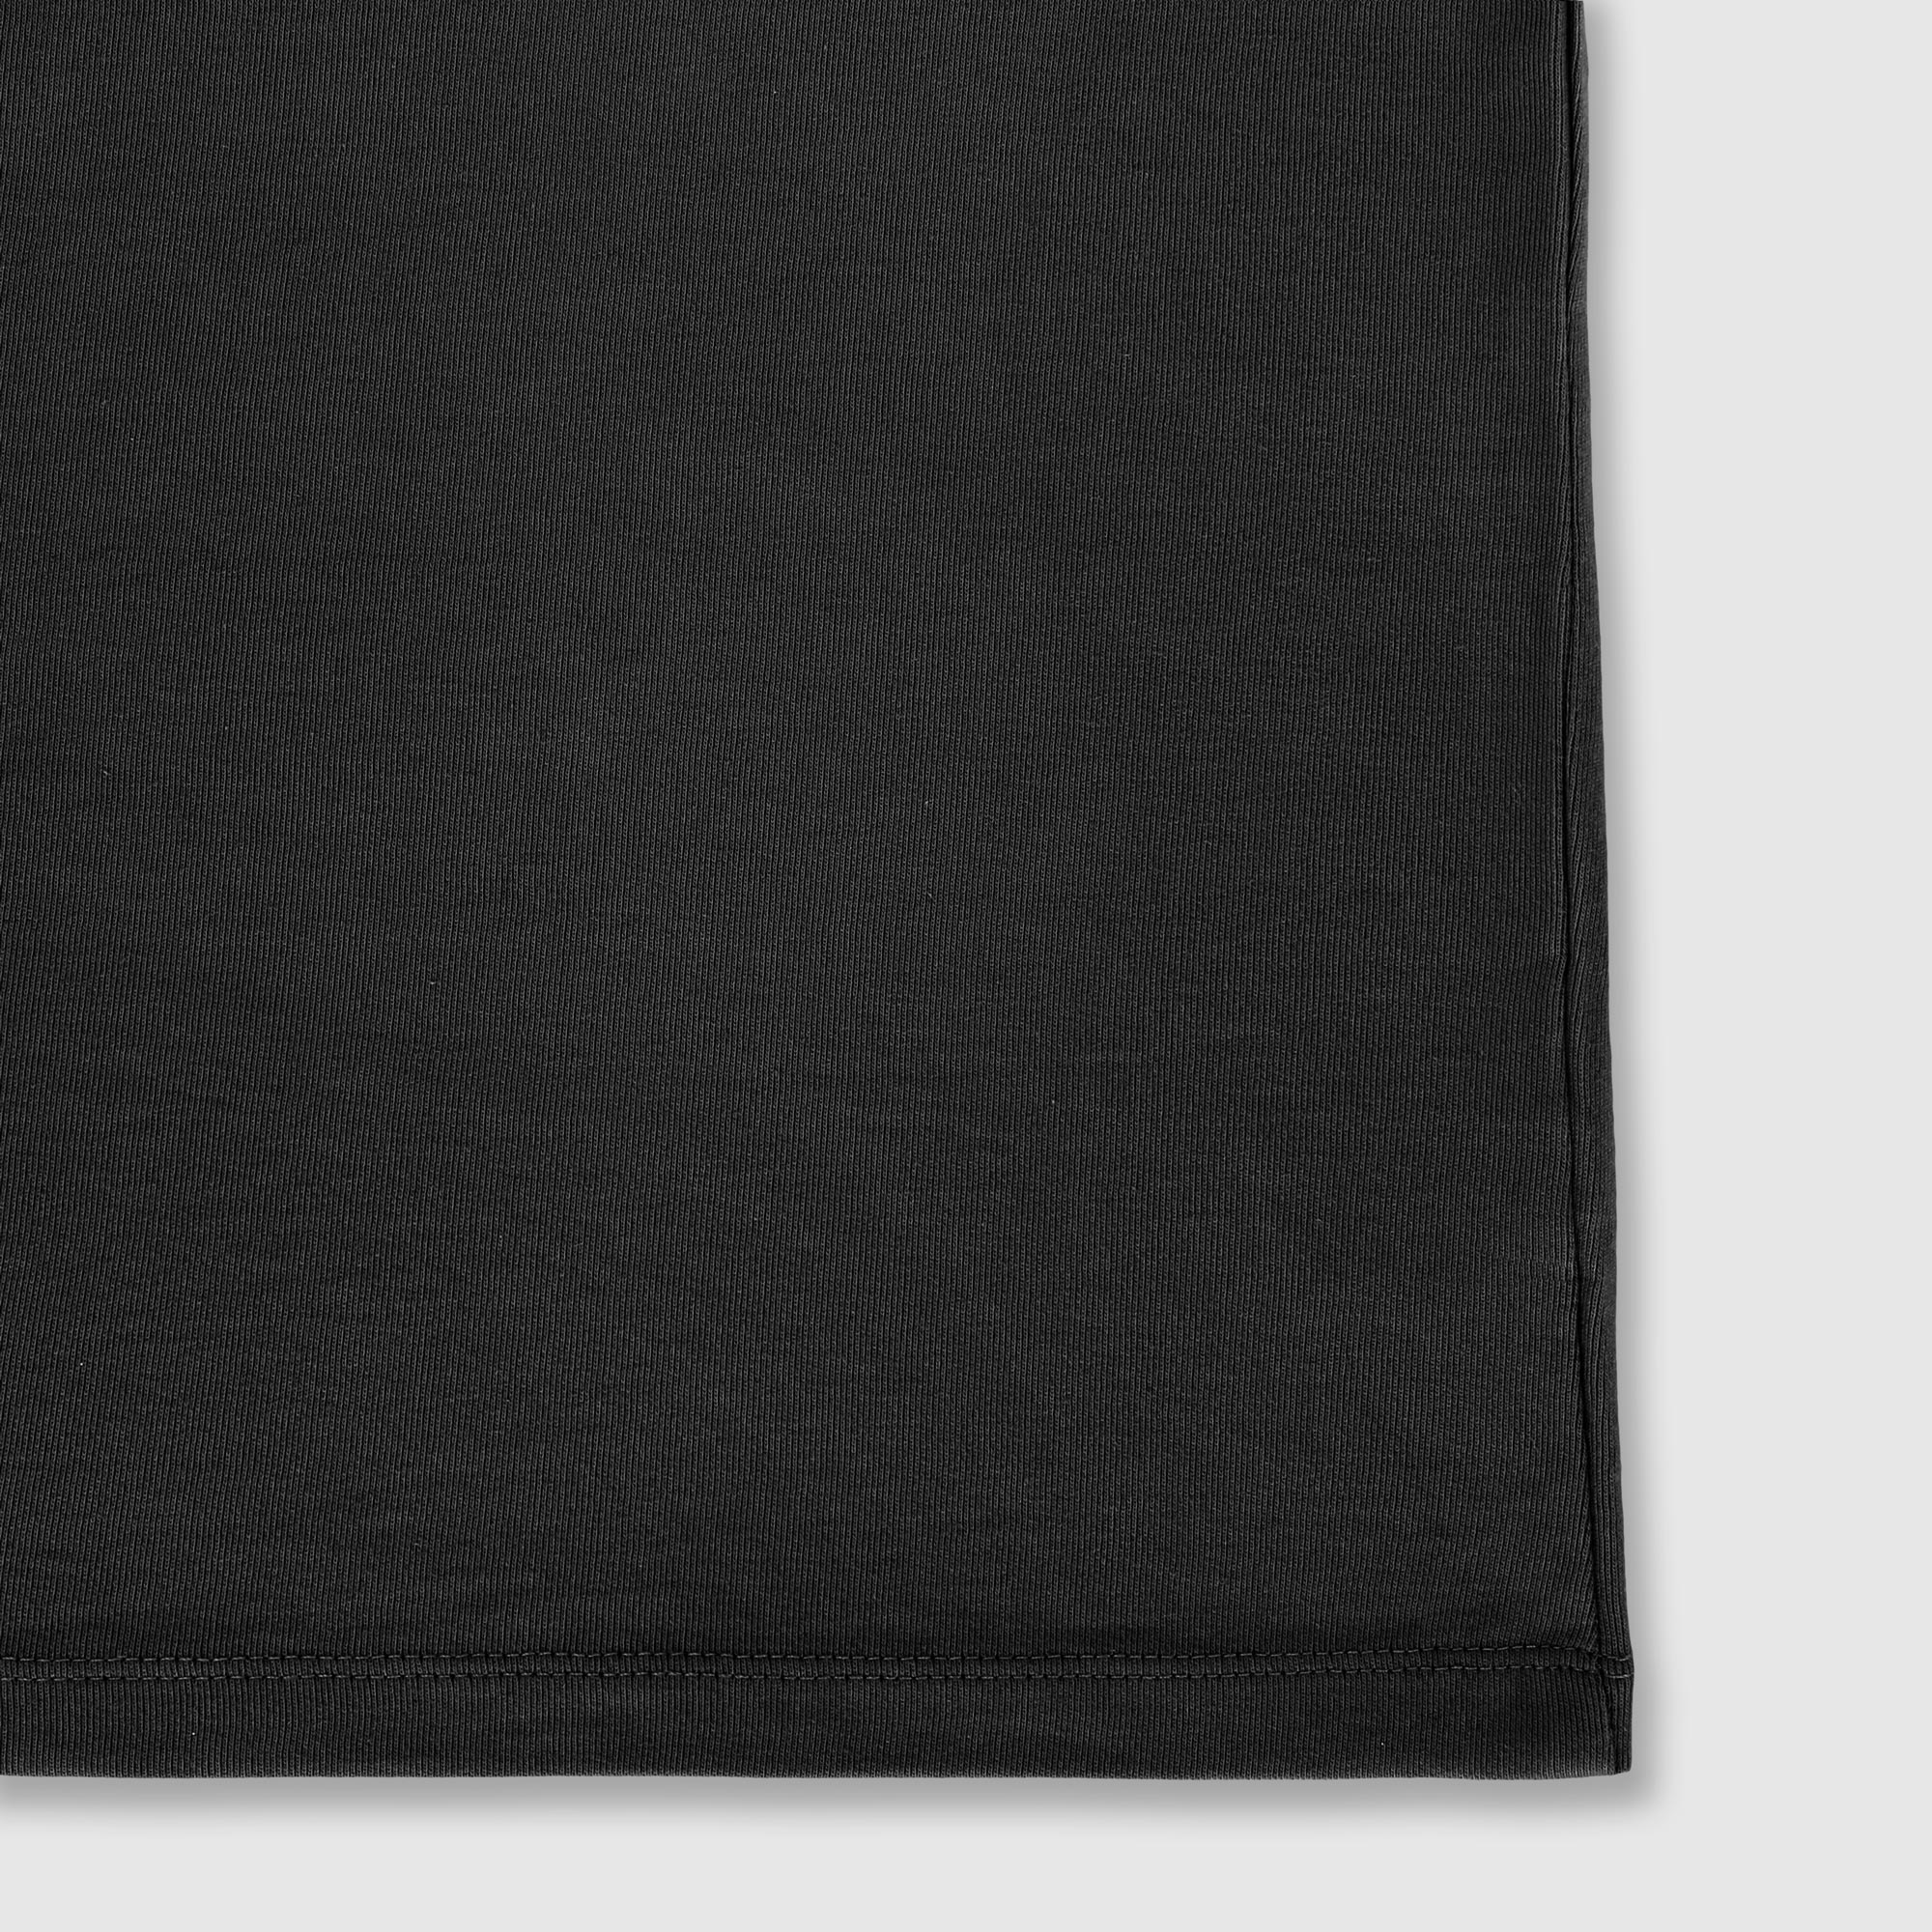 Рубашка мужская Diva Teks поло черная, цвет черный, размер M - фото 5